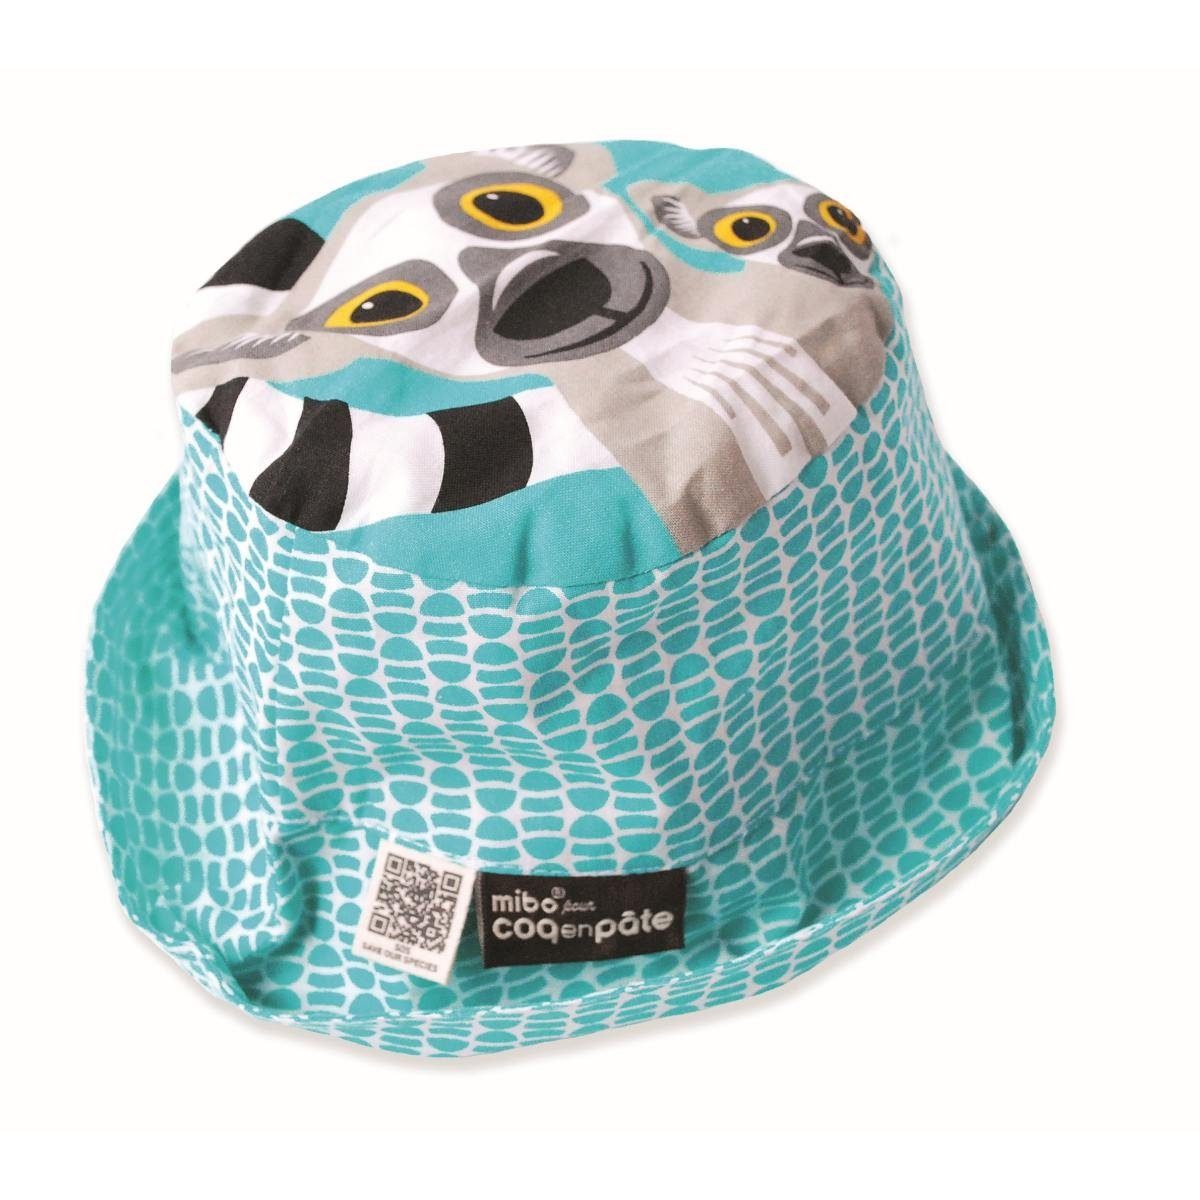 COQ EN PATE Sonnenhut Farbenfroher Kinder-Hut mit Tiermotiven und Mustern Sonnenschutz Lemur - Größe: M